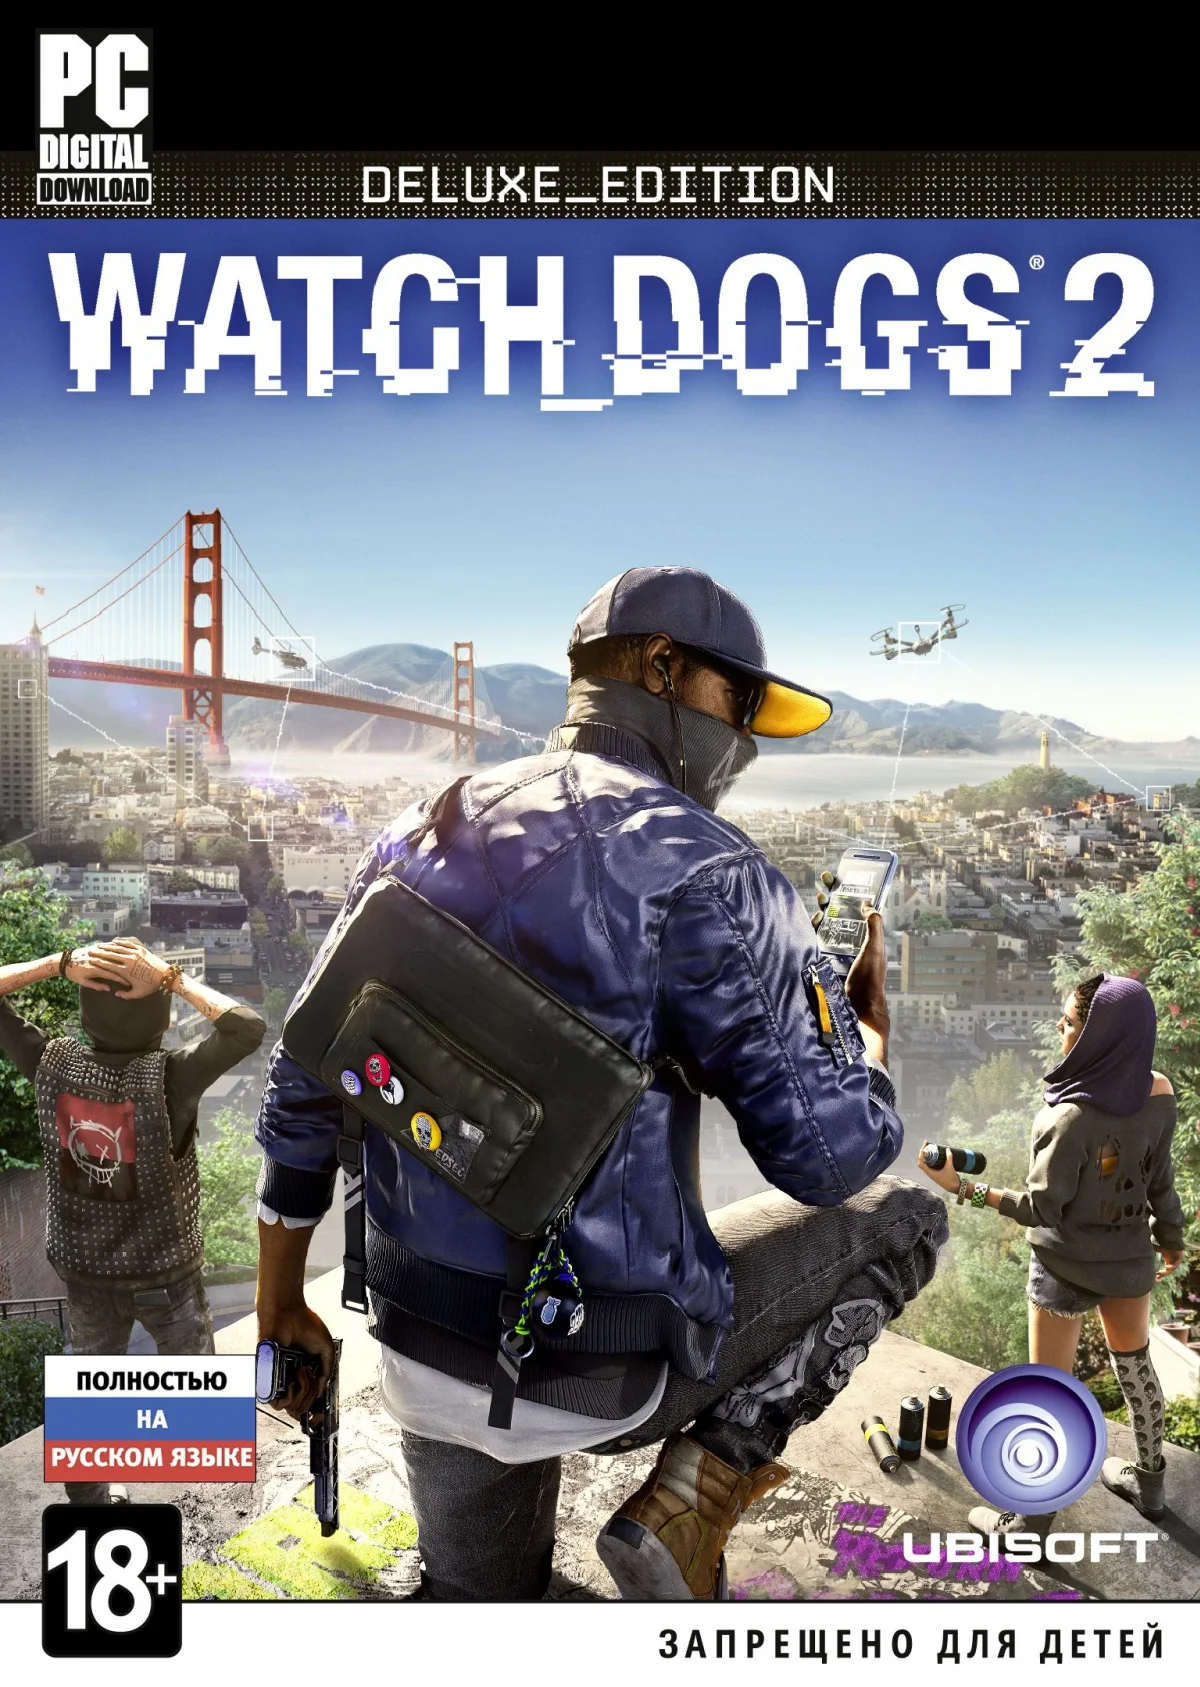 Watch Dogs 2 вышла на РС - фото 4